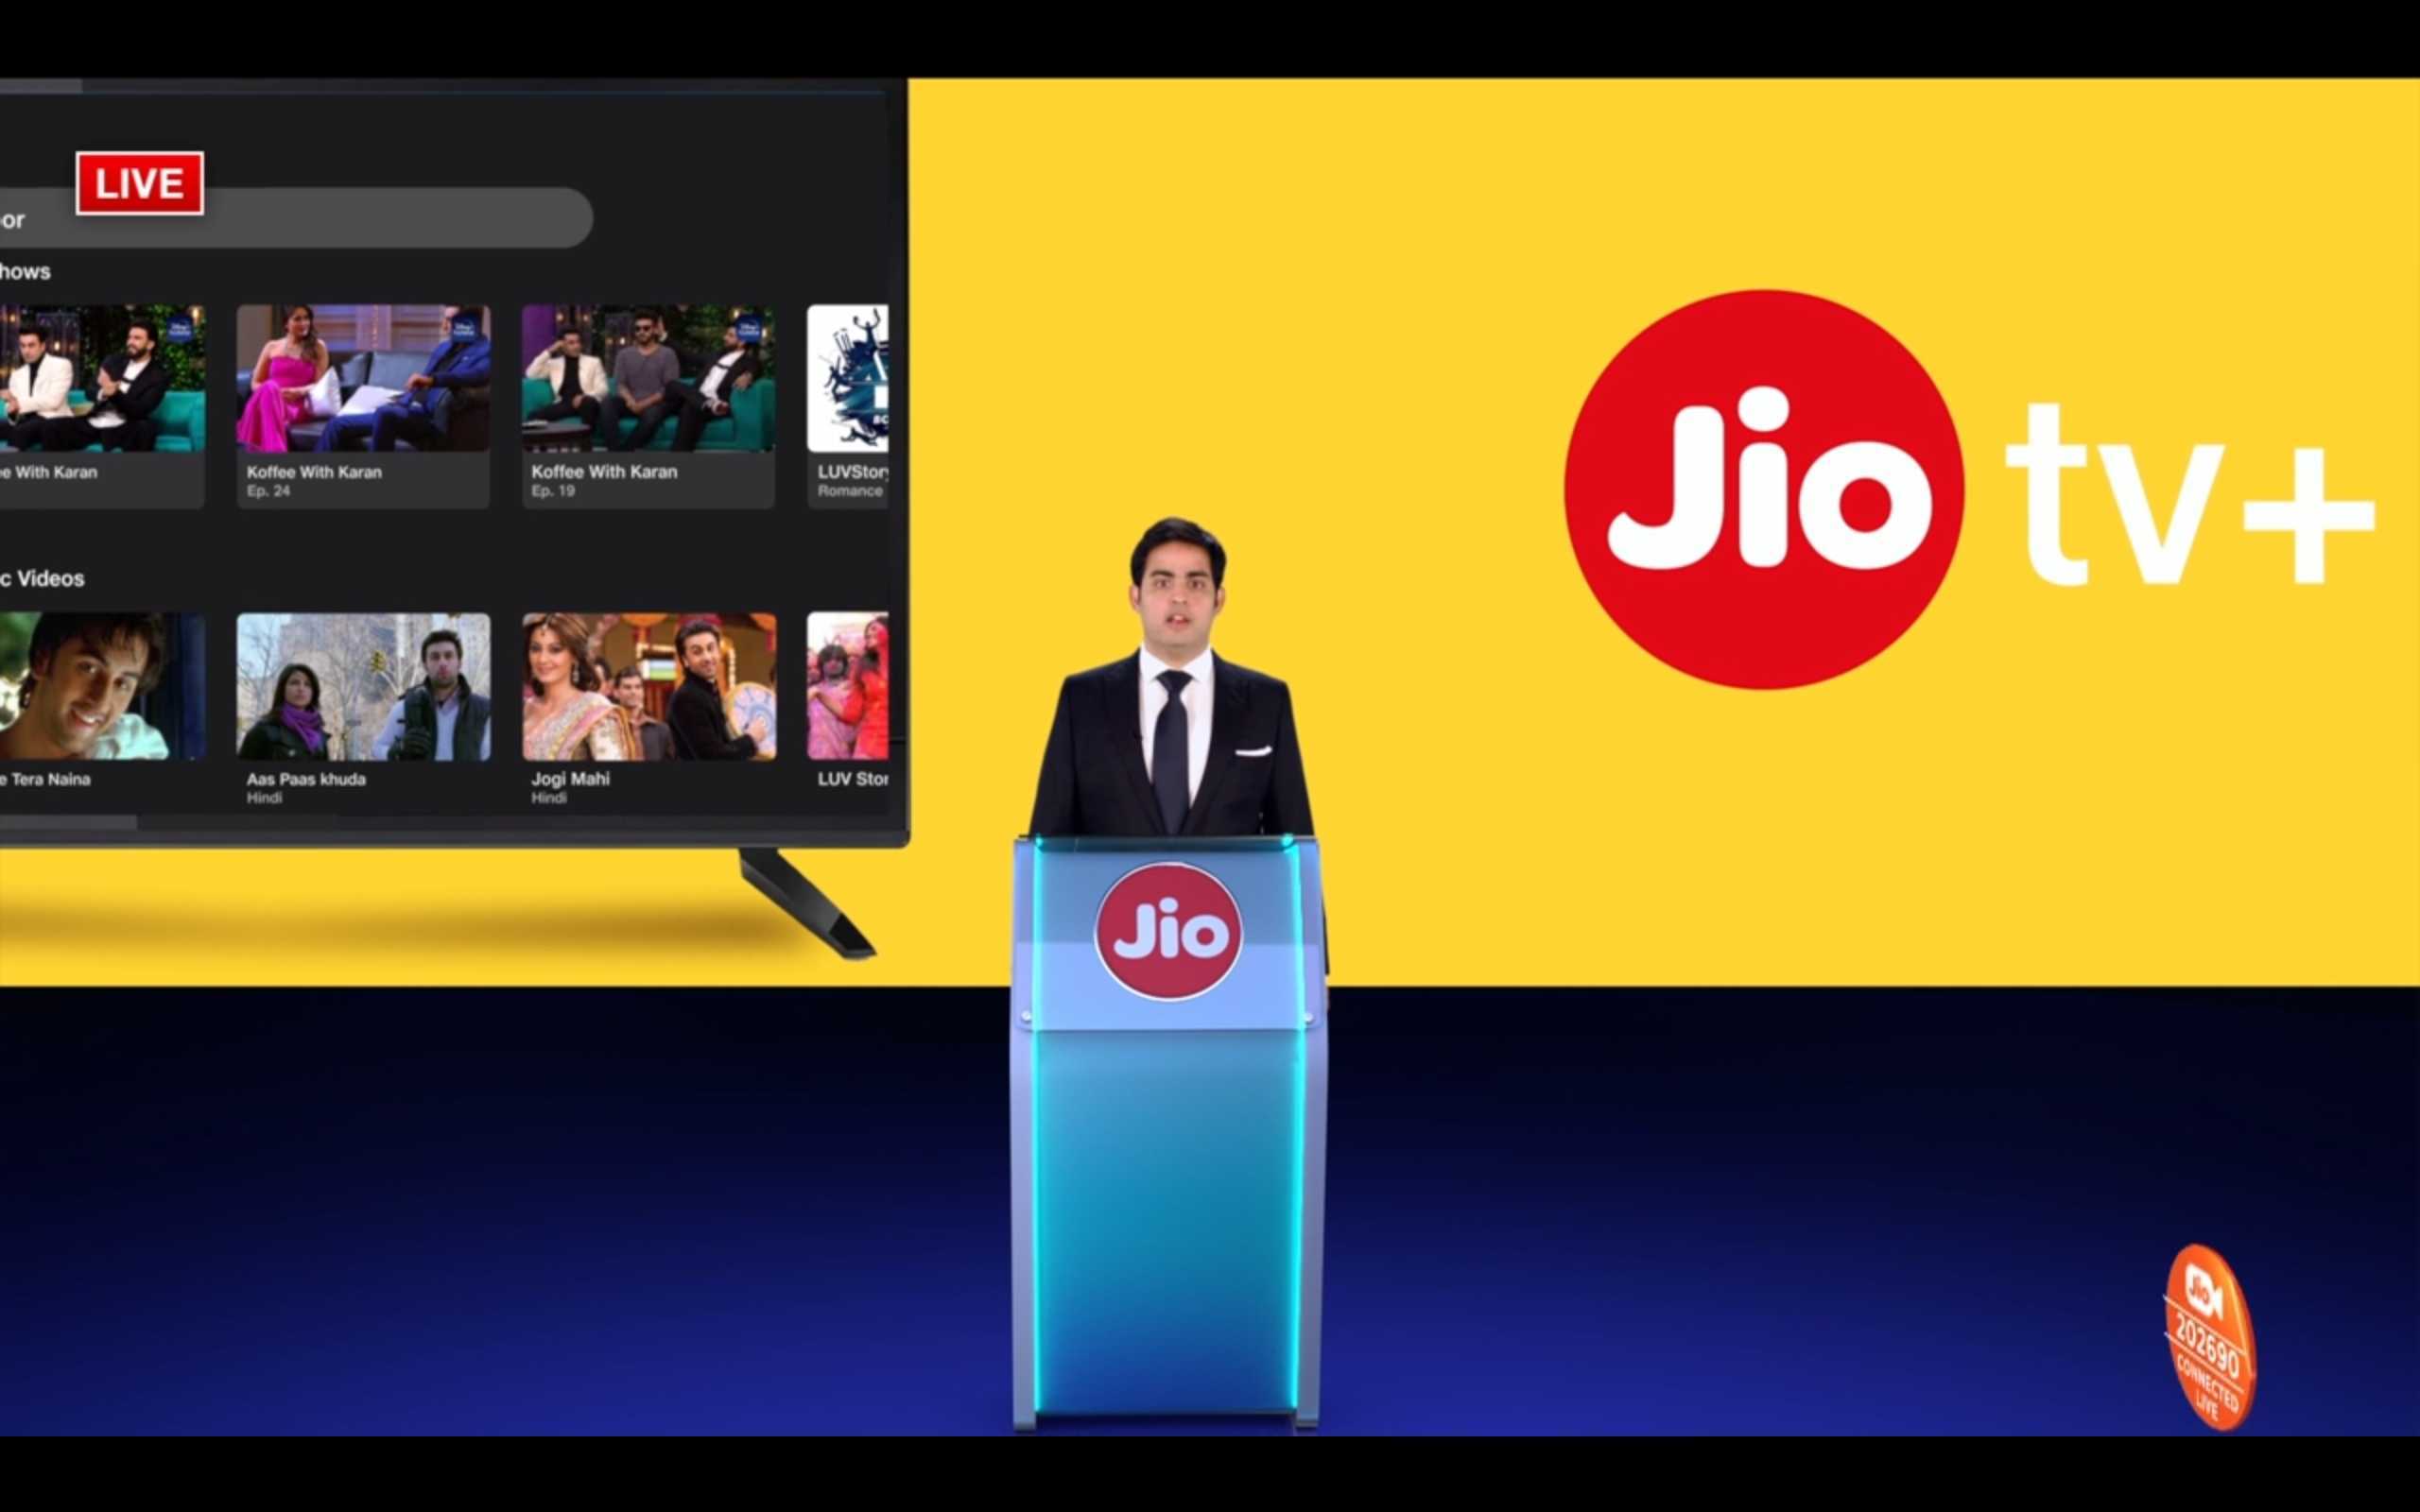 Jio TV + unifica aplicaciones OTT populares y DTH TV bajo un mismo techo